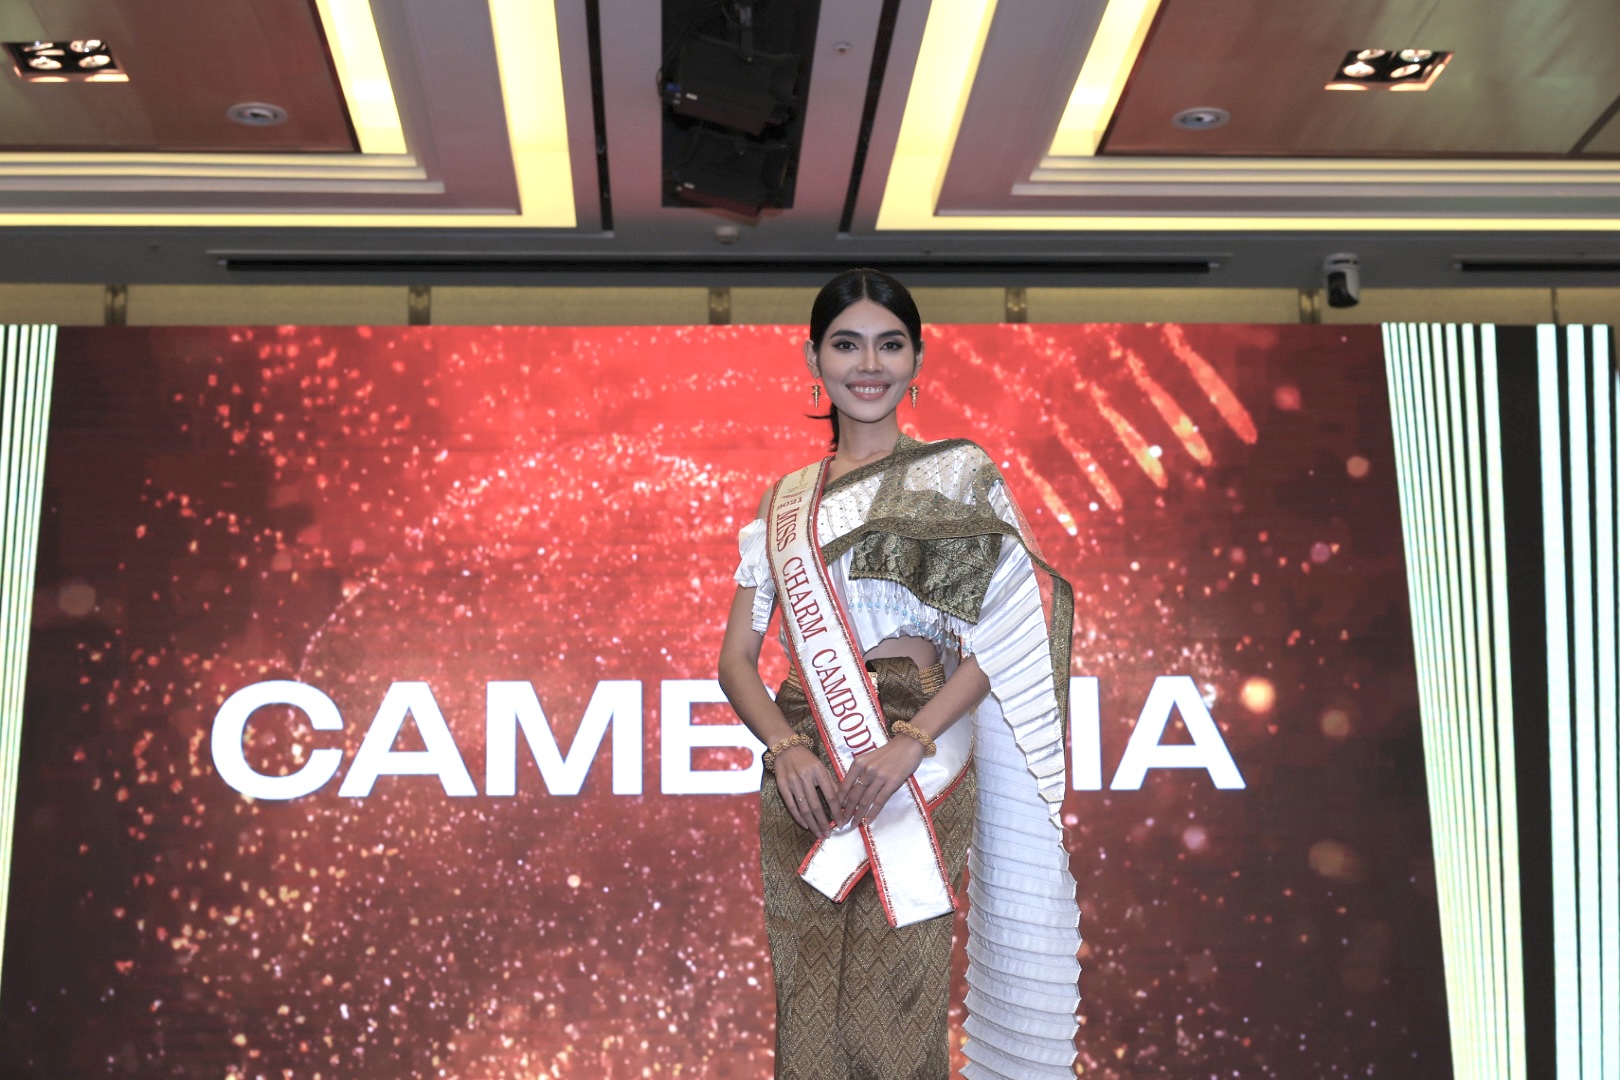 Hoa hậu Miss Charm nhận giải thưởng gần 2,5 tỉ đồng - Ảnh 5.